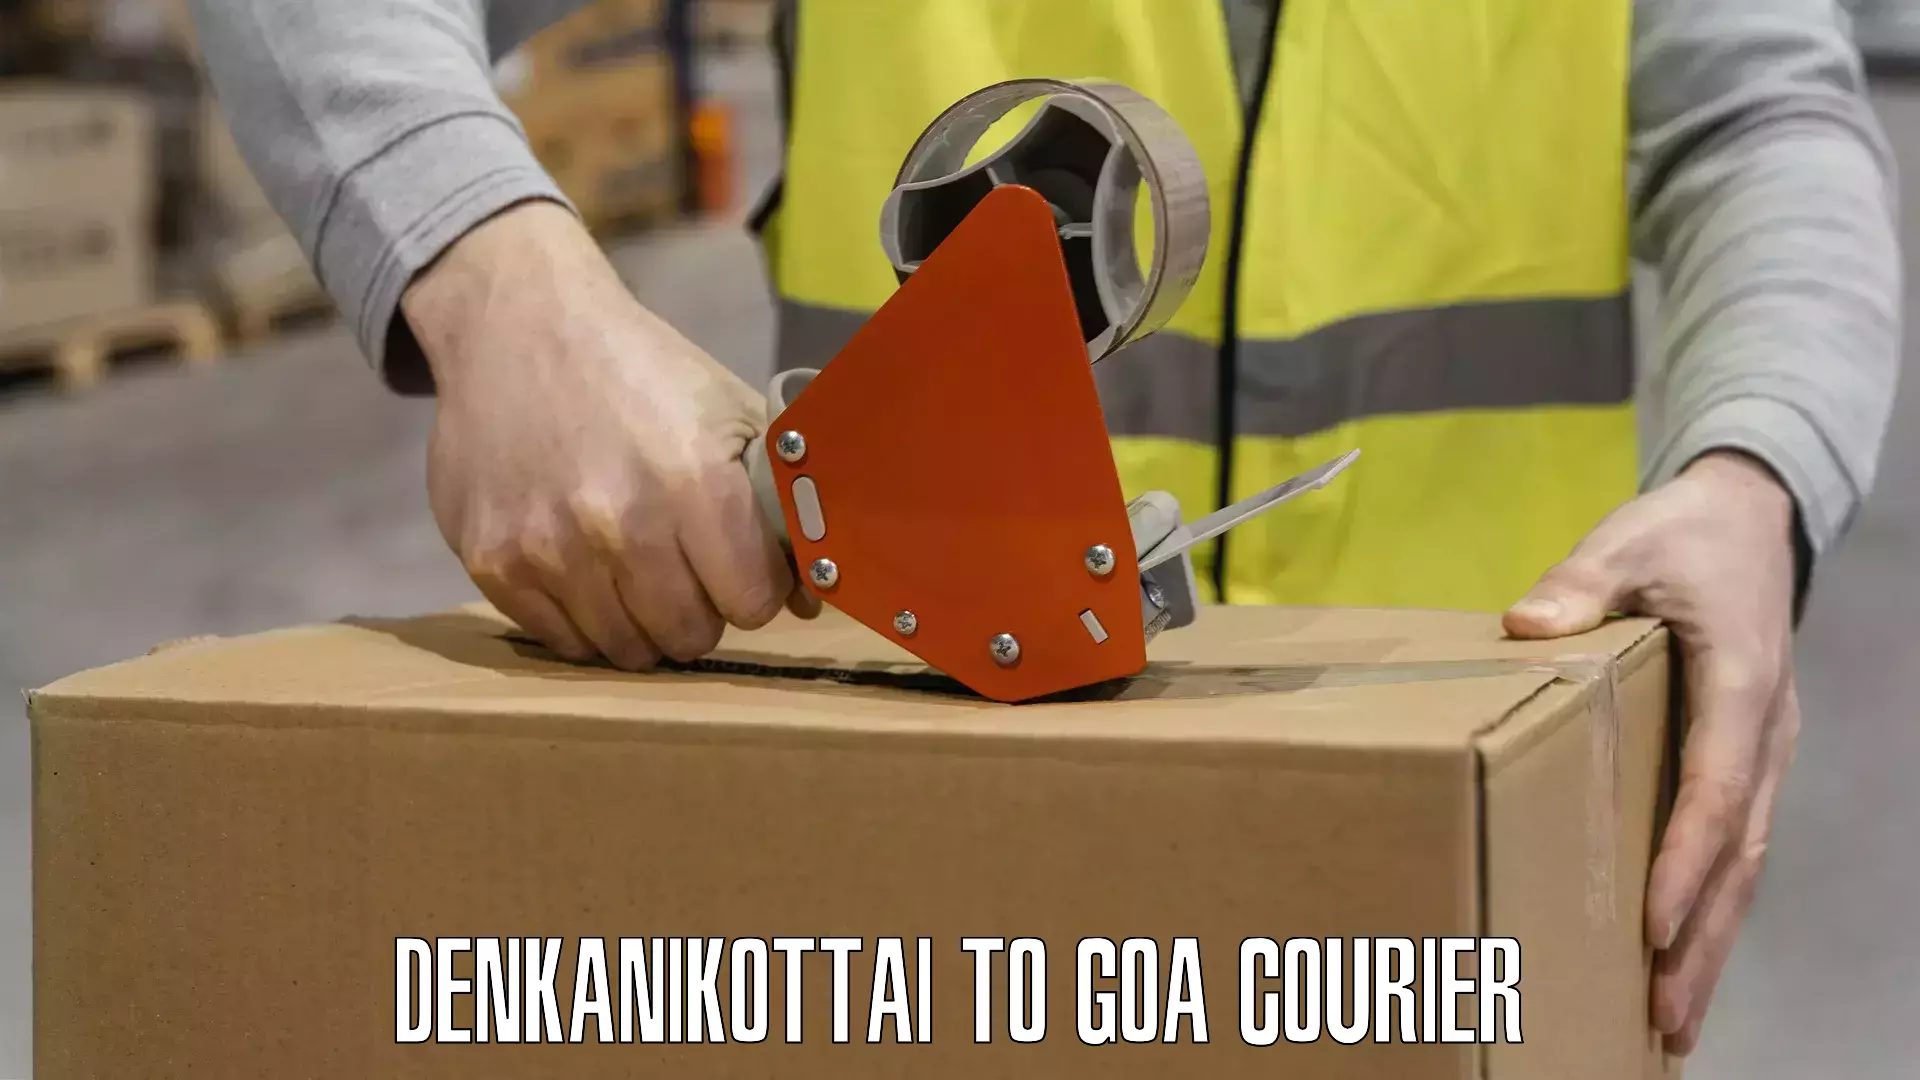 International shipping rates Denkanikottai to Goa